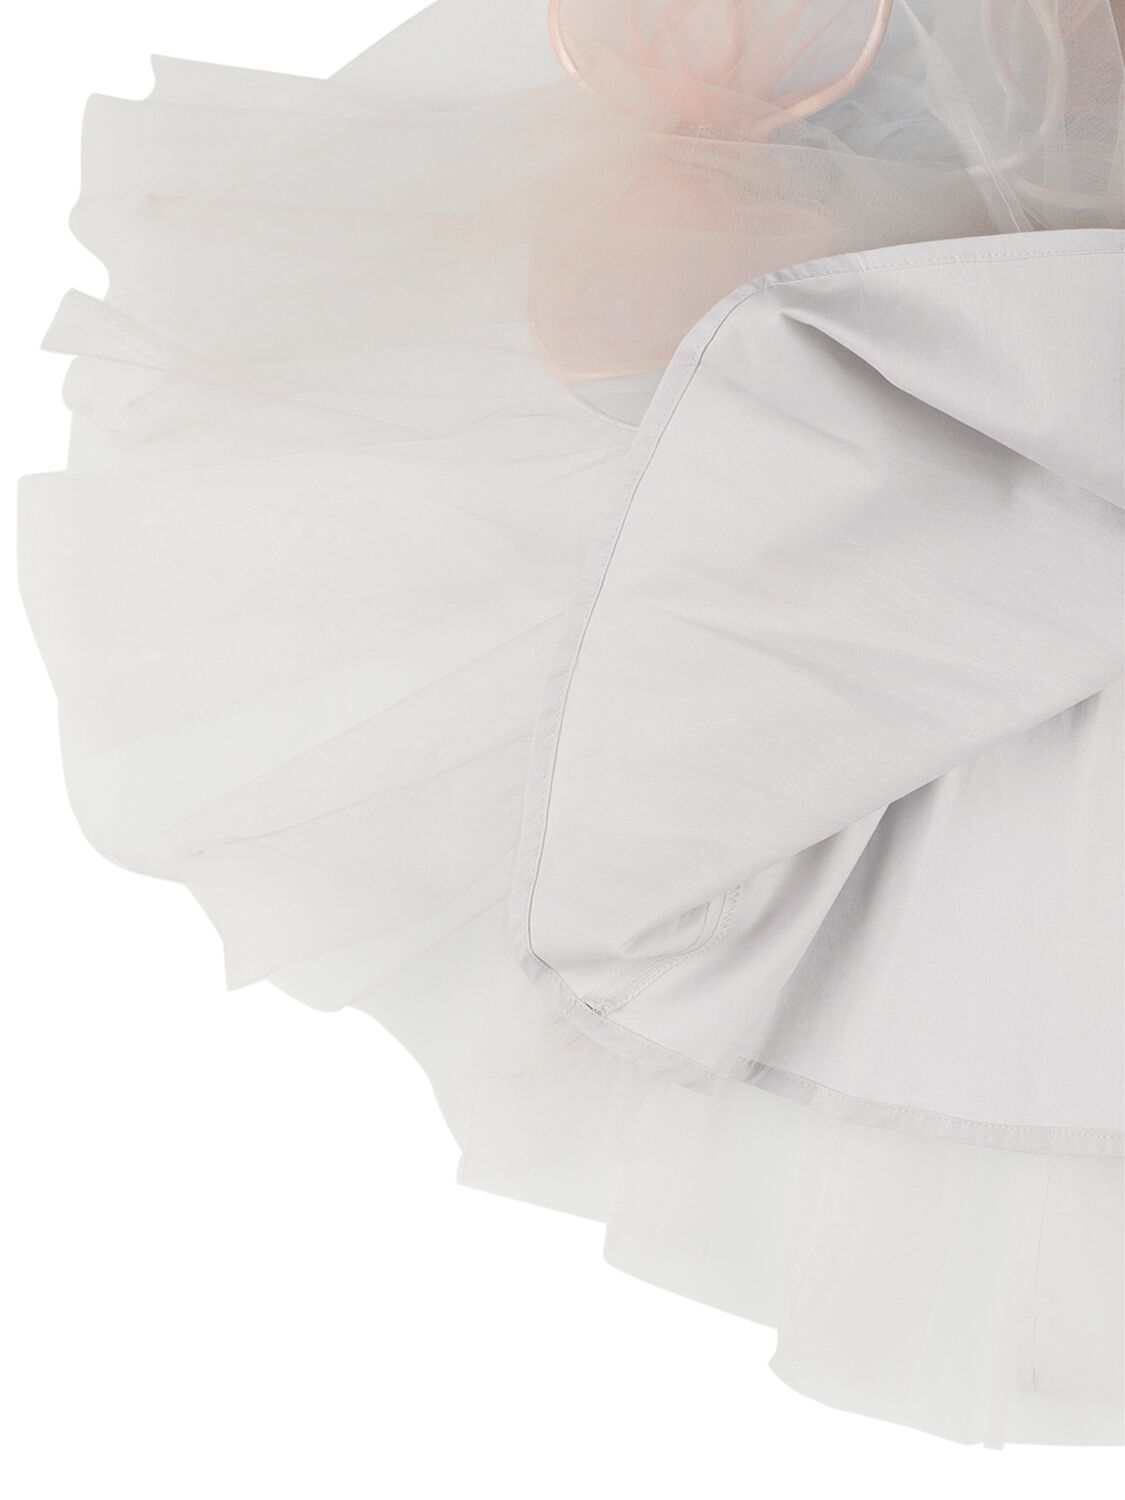 Shop Nikolia Tulle Dress W/ Butterfly Appliqués In White